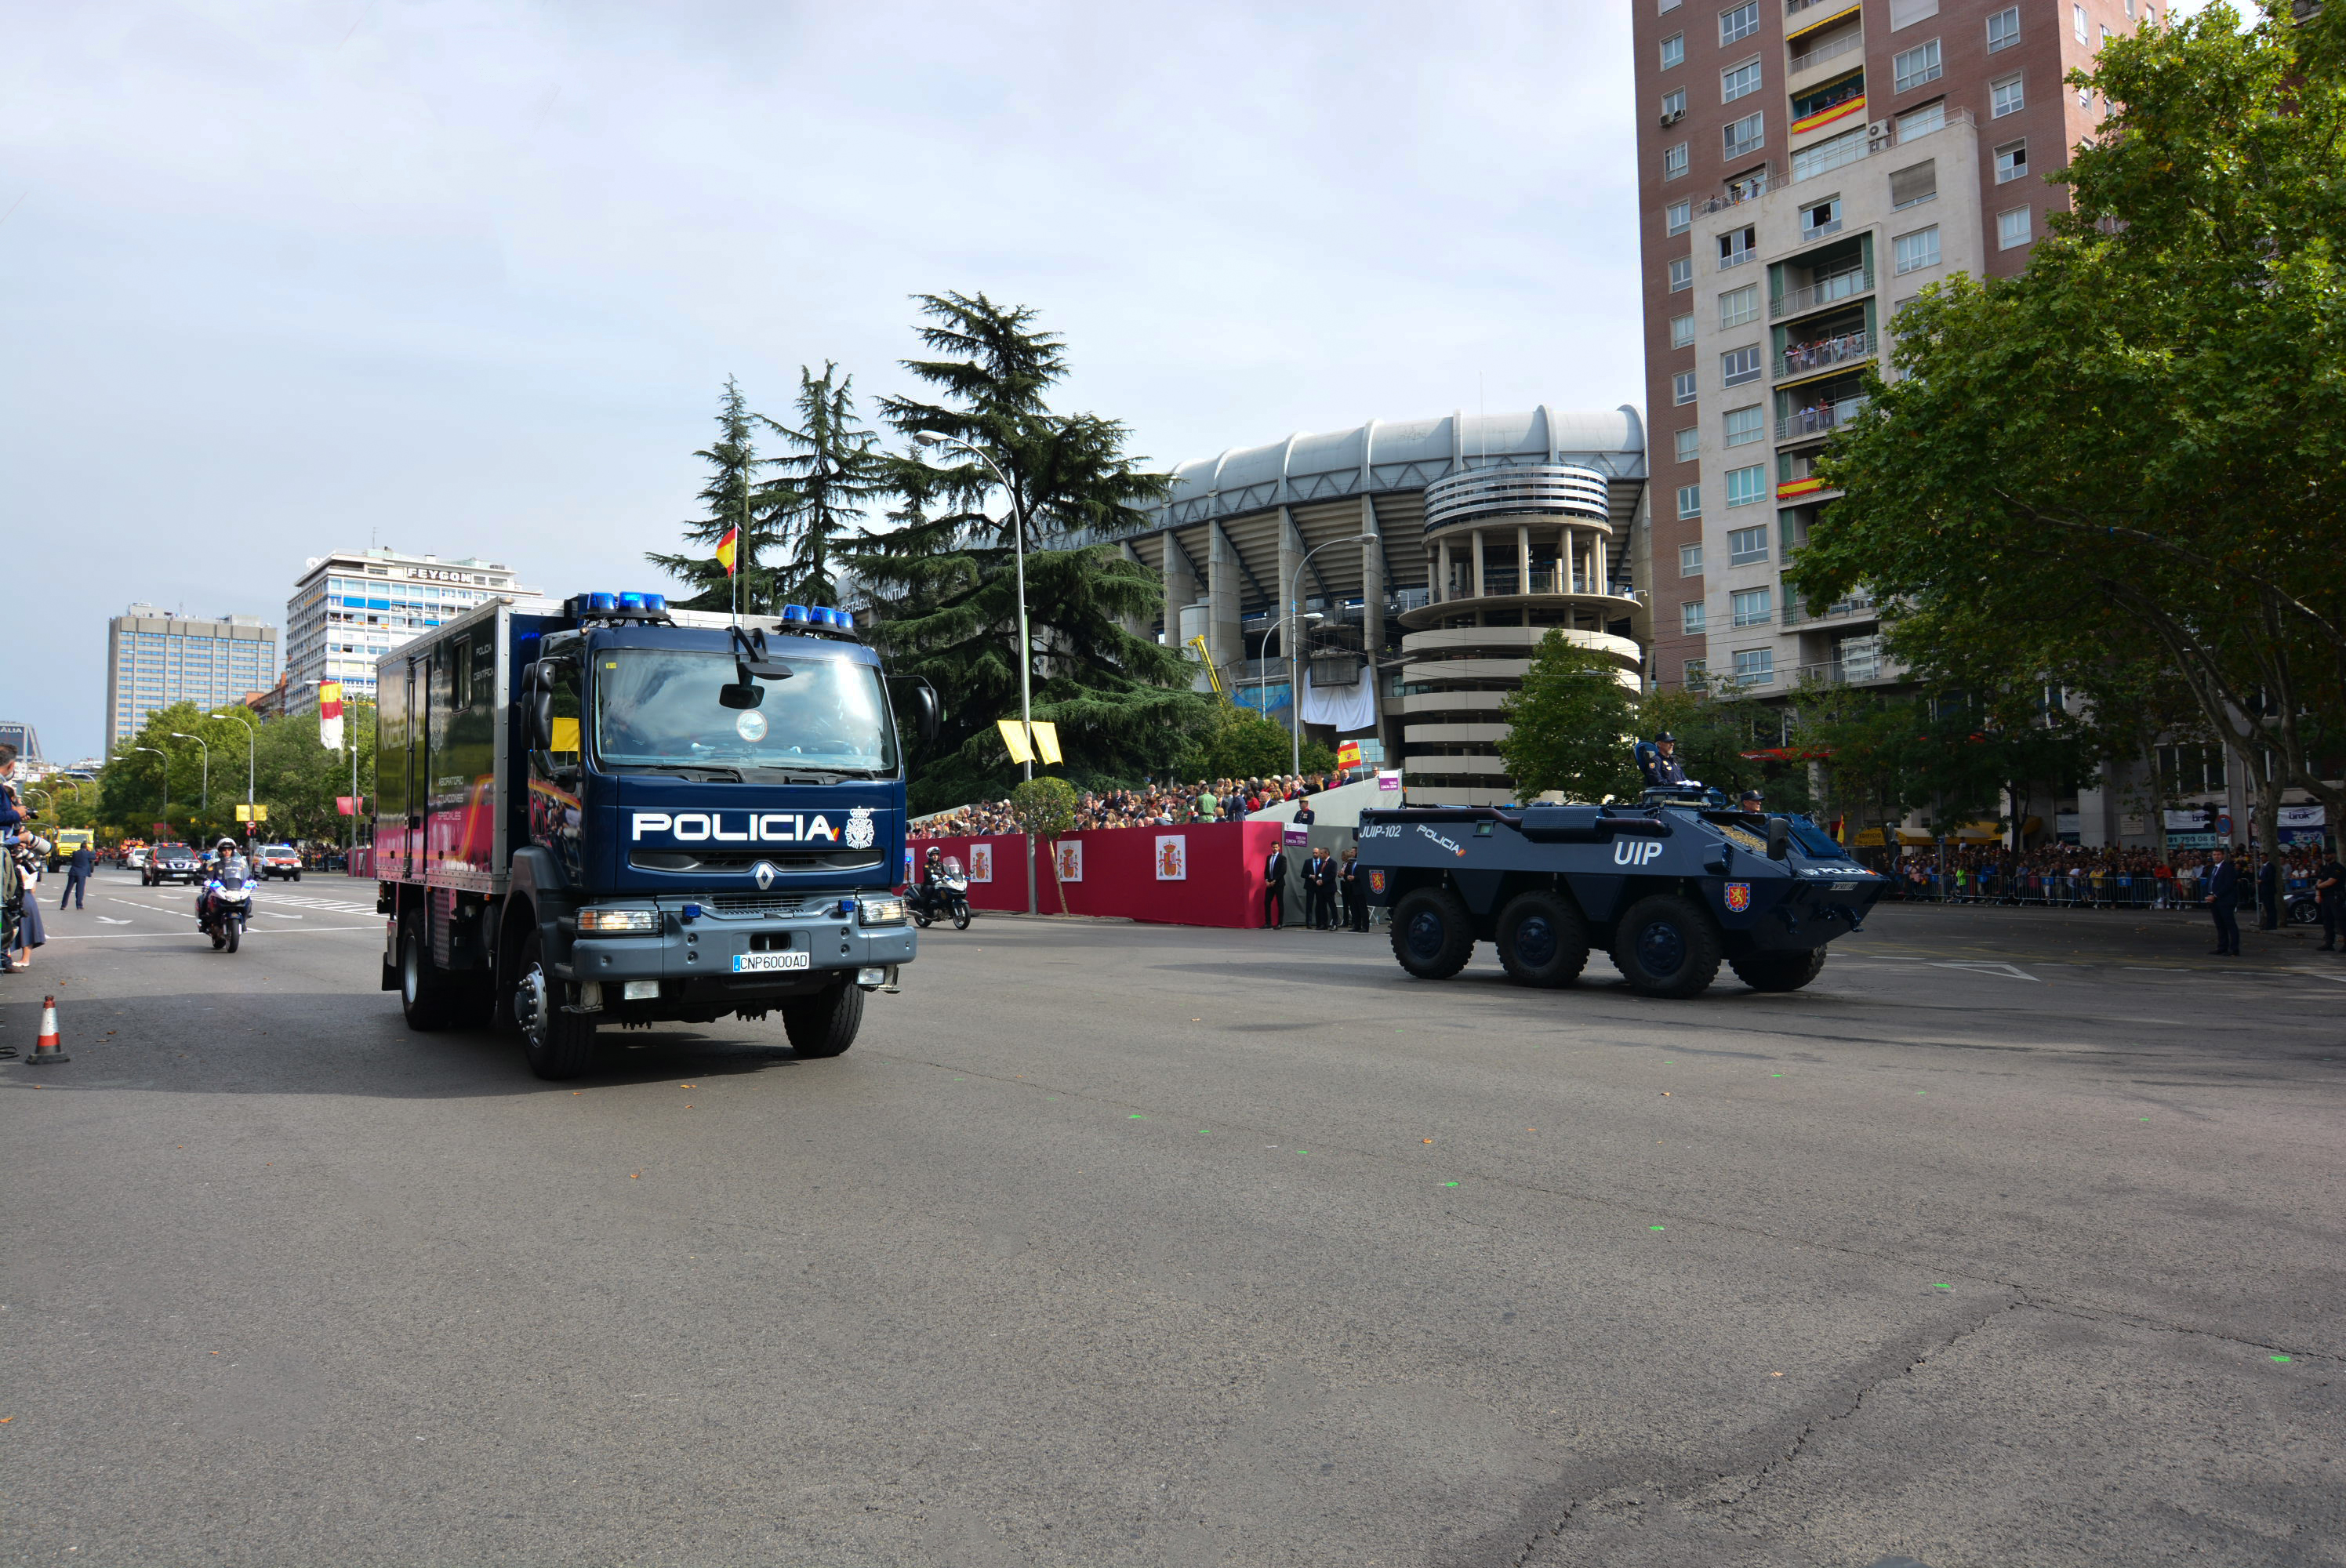 Camión de Policía Científica y vehículo blindado BMR de la Unidad de Intervención Policial